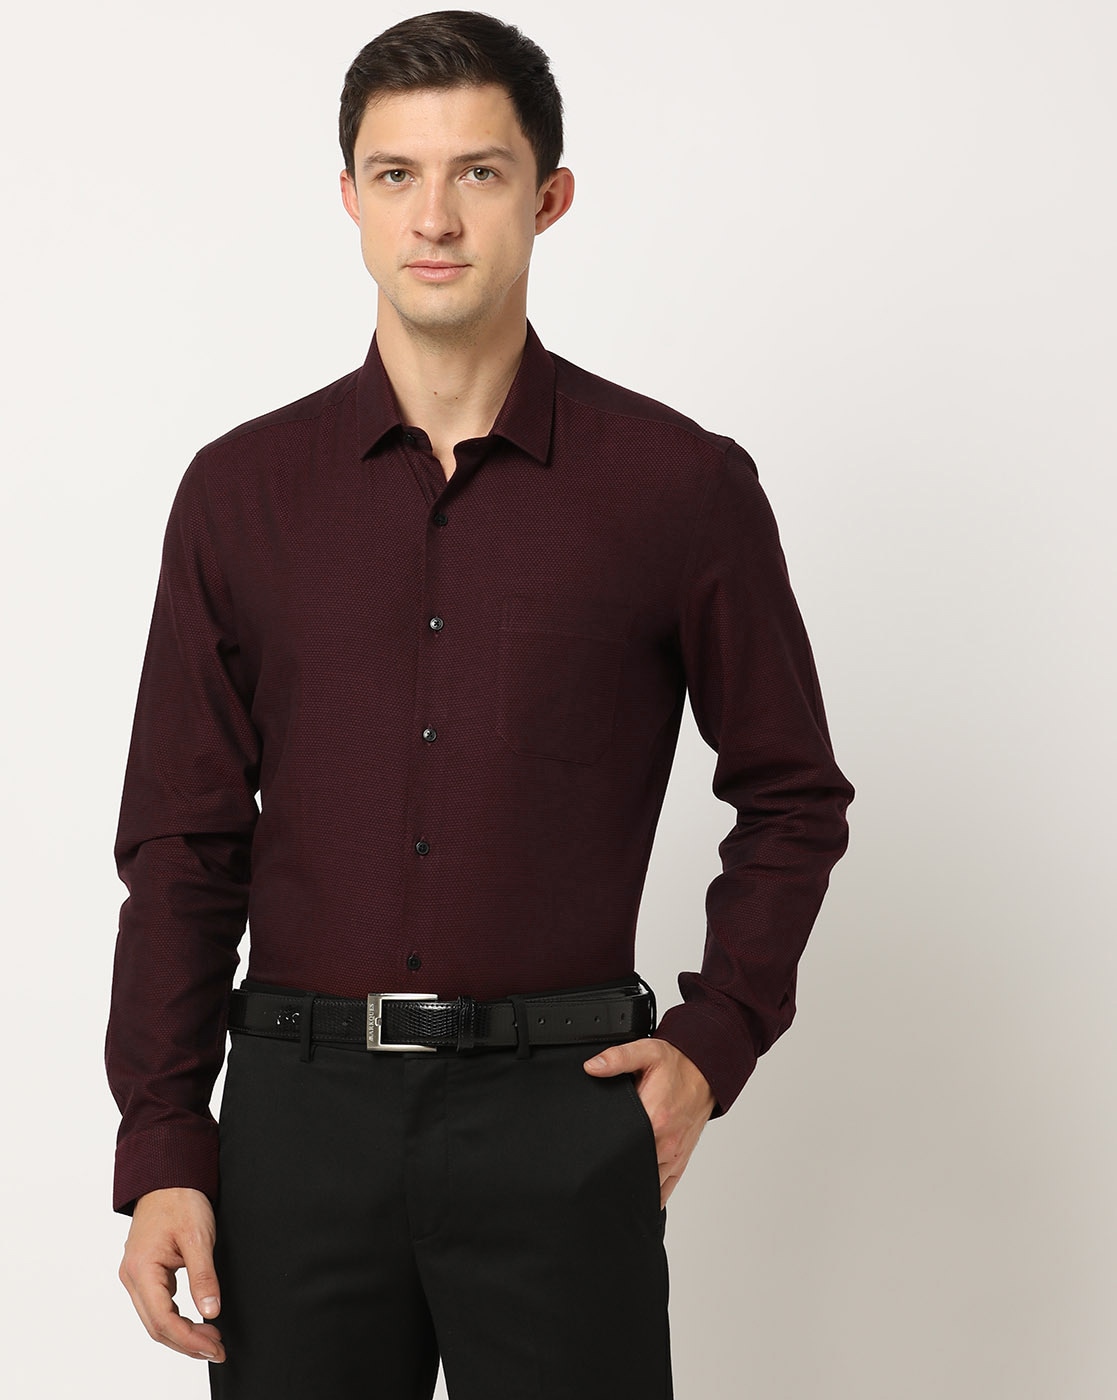 Buy Premium Maroon Shirt for Men Online - TryBuy